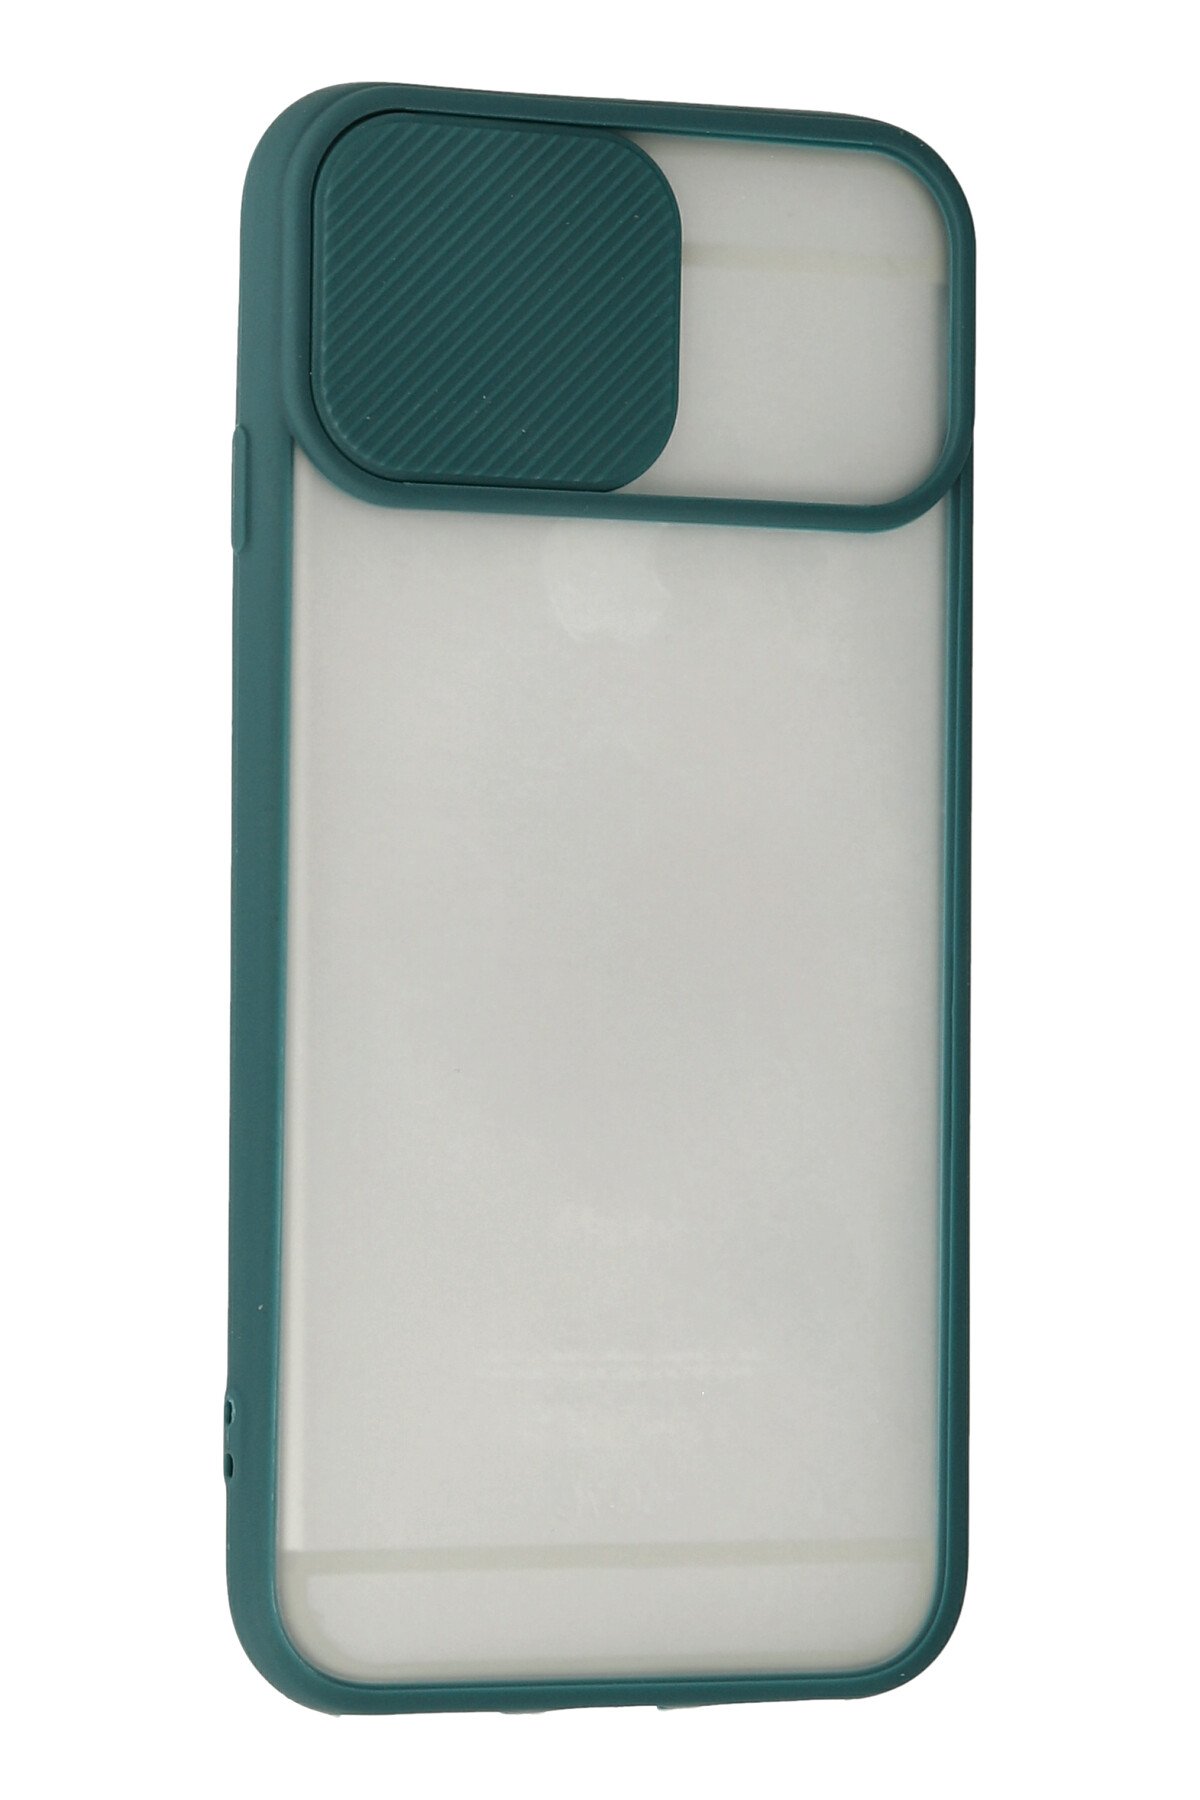 Newface iPhone 6 Plus Kılıf Zegna Yüzüklü Silikon Kapak - Koyu Yeşil